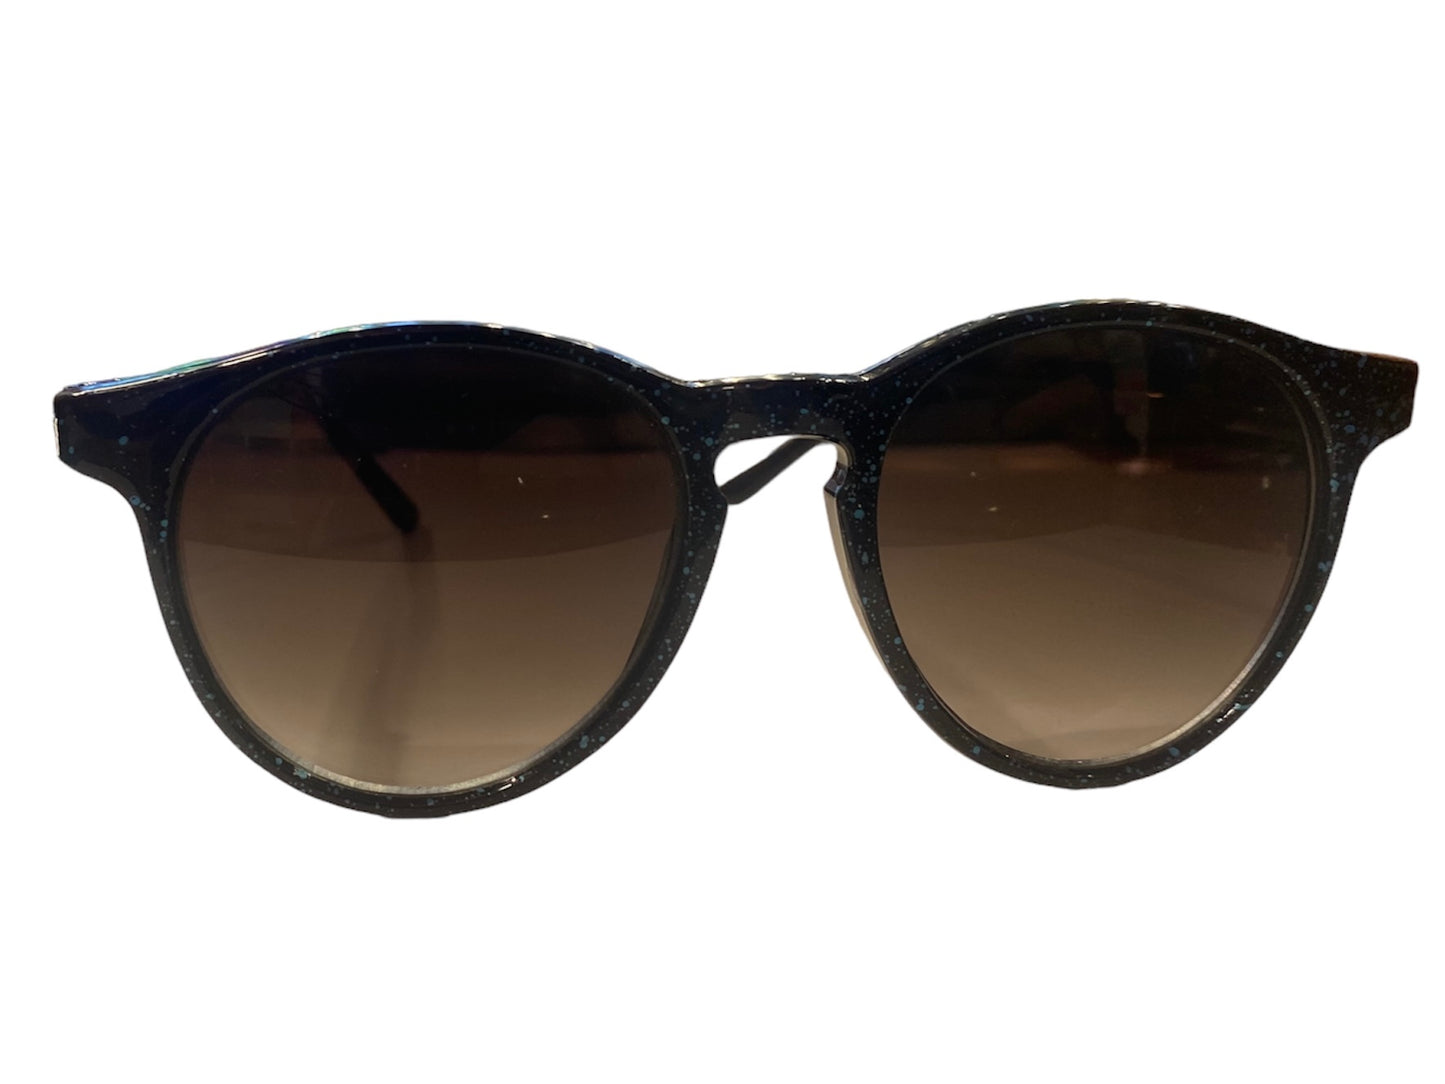 Vintage Black & Teal Sparkle Sunglasses